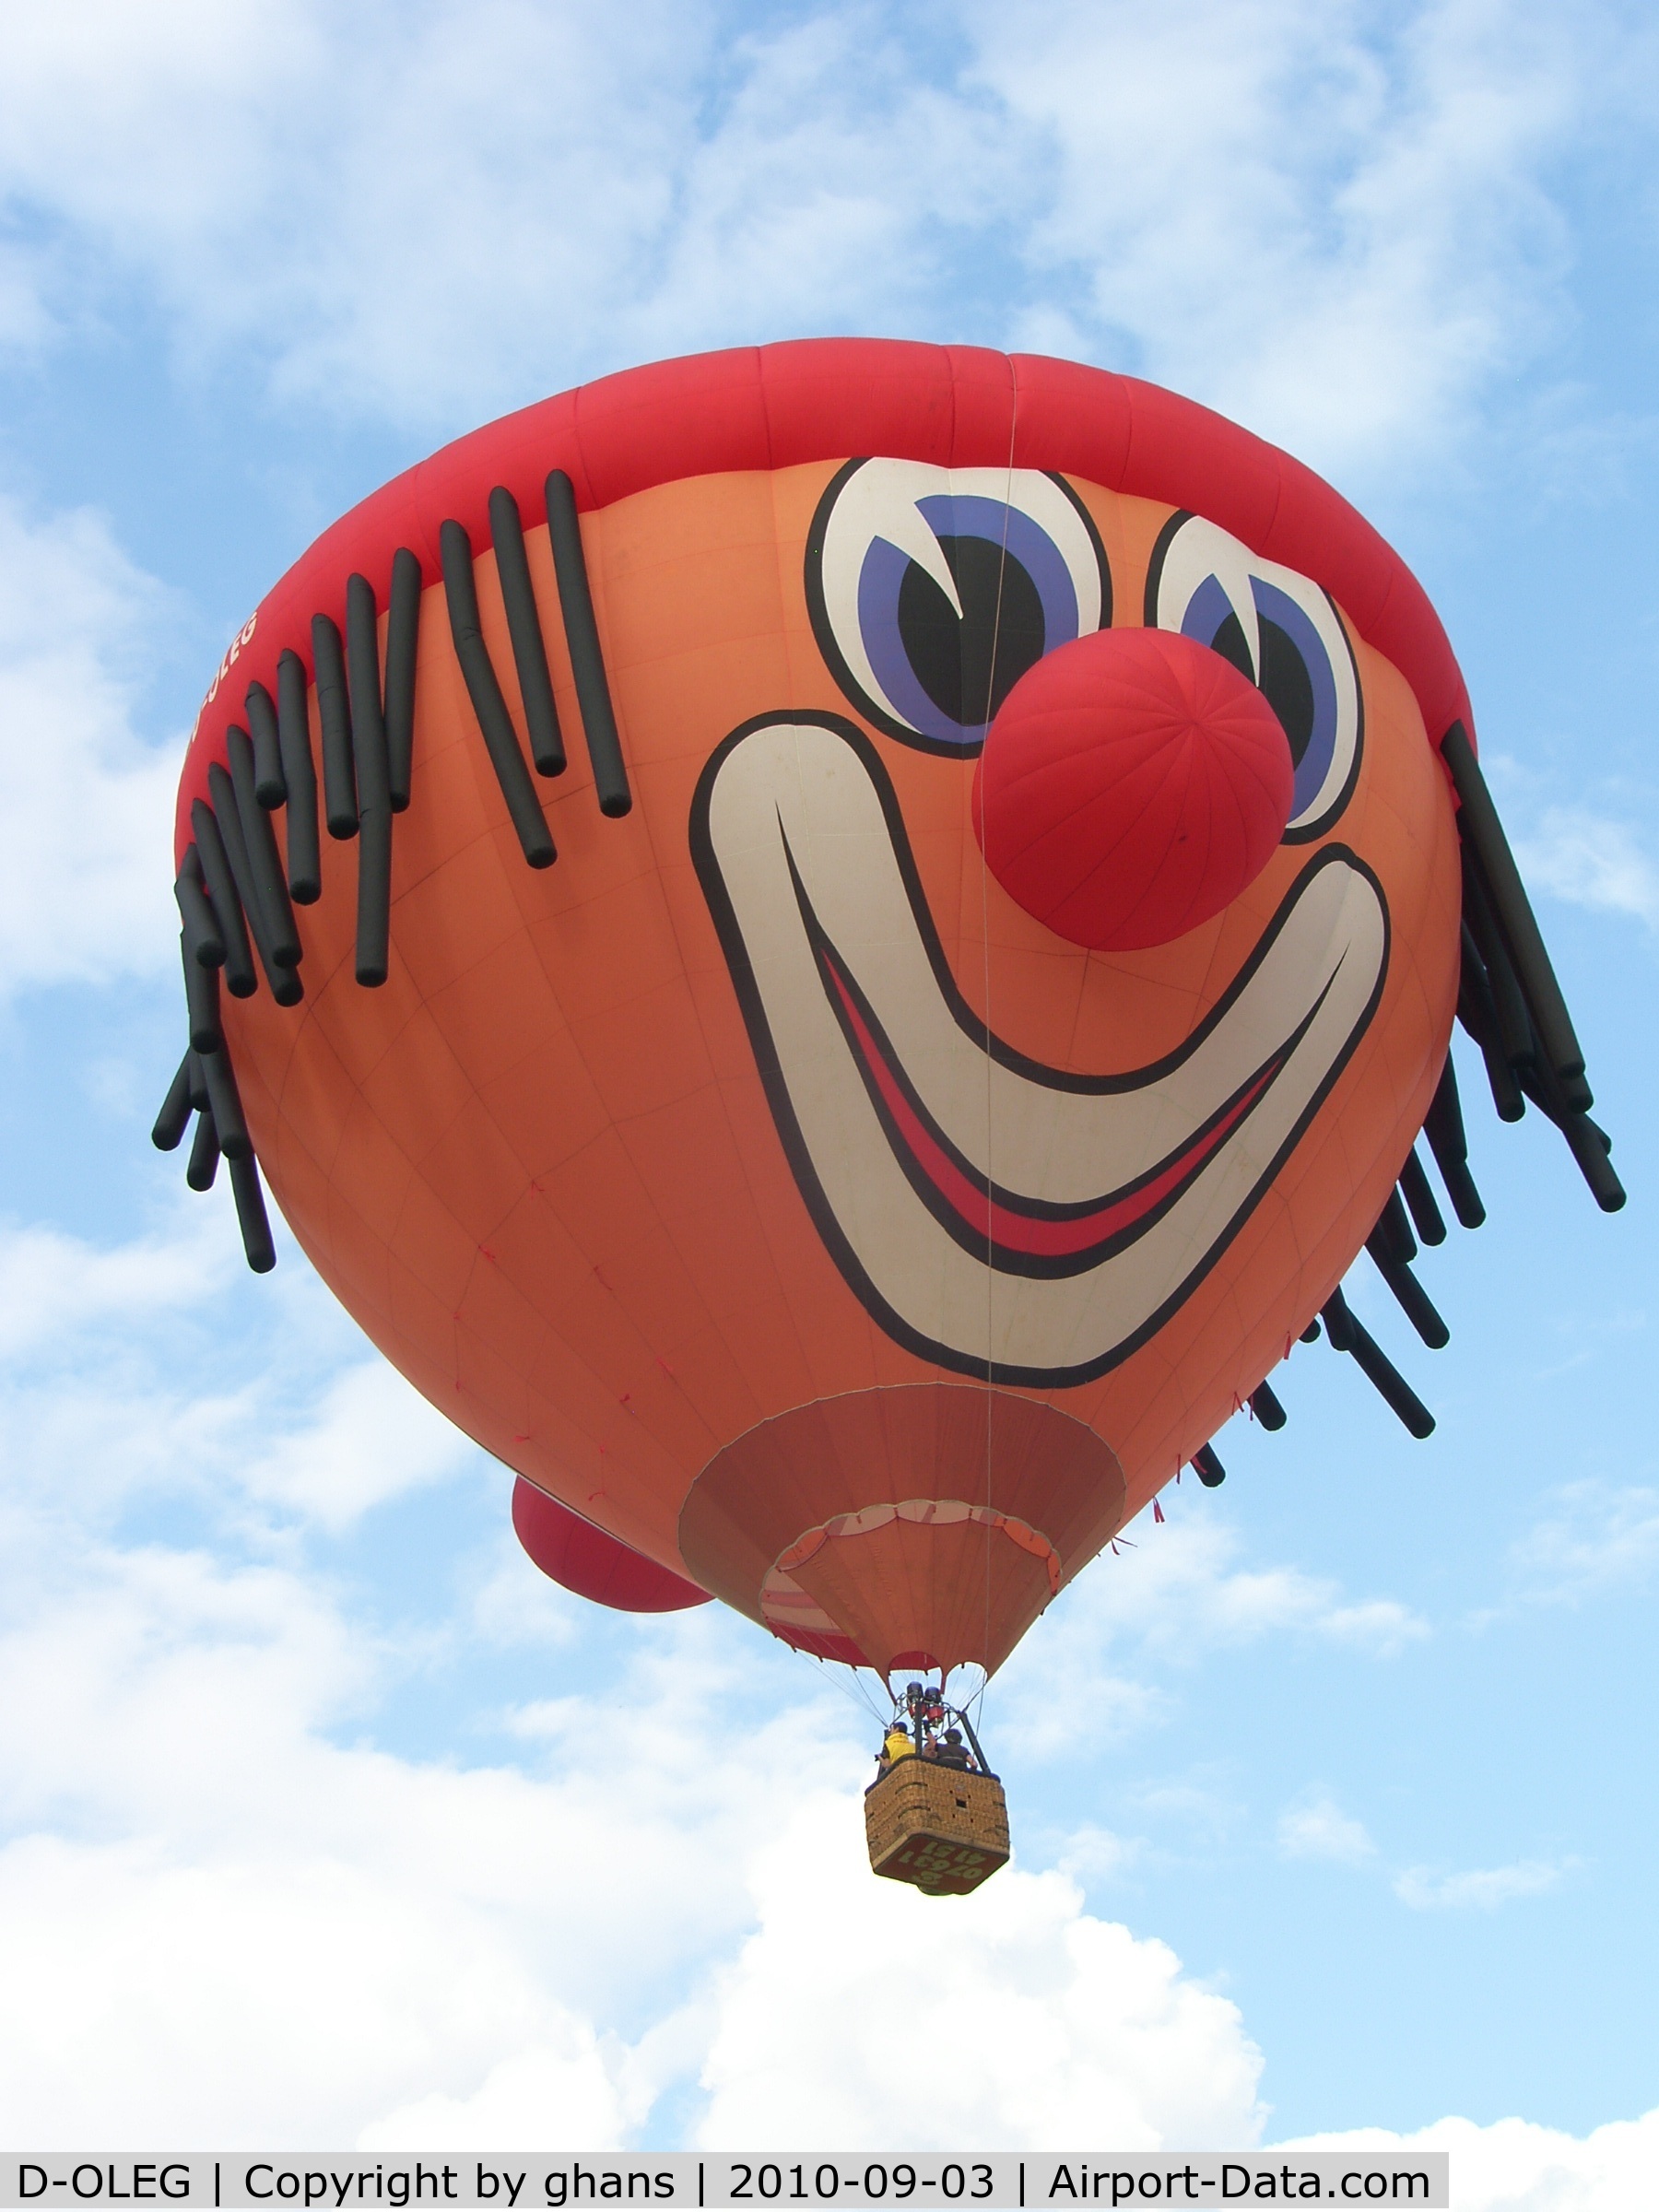 D-OLEG, 2002 Schroeder Fire Balloons SS Clown C/N 1027, WIM 2010